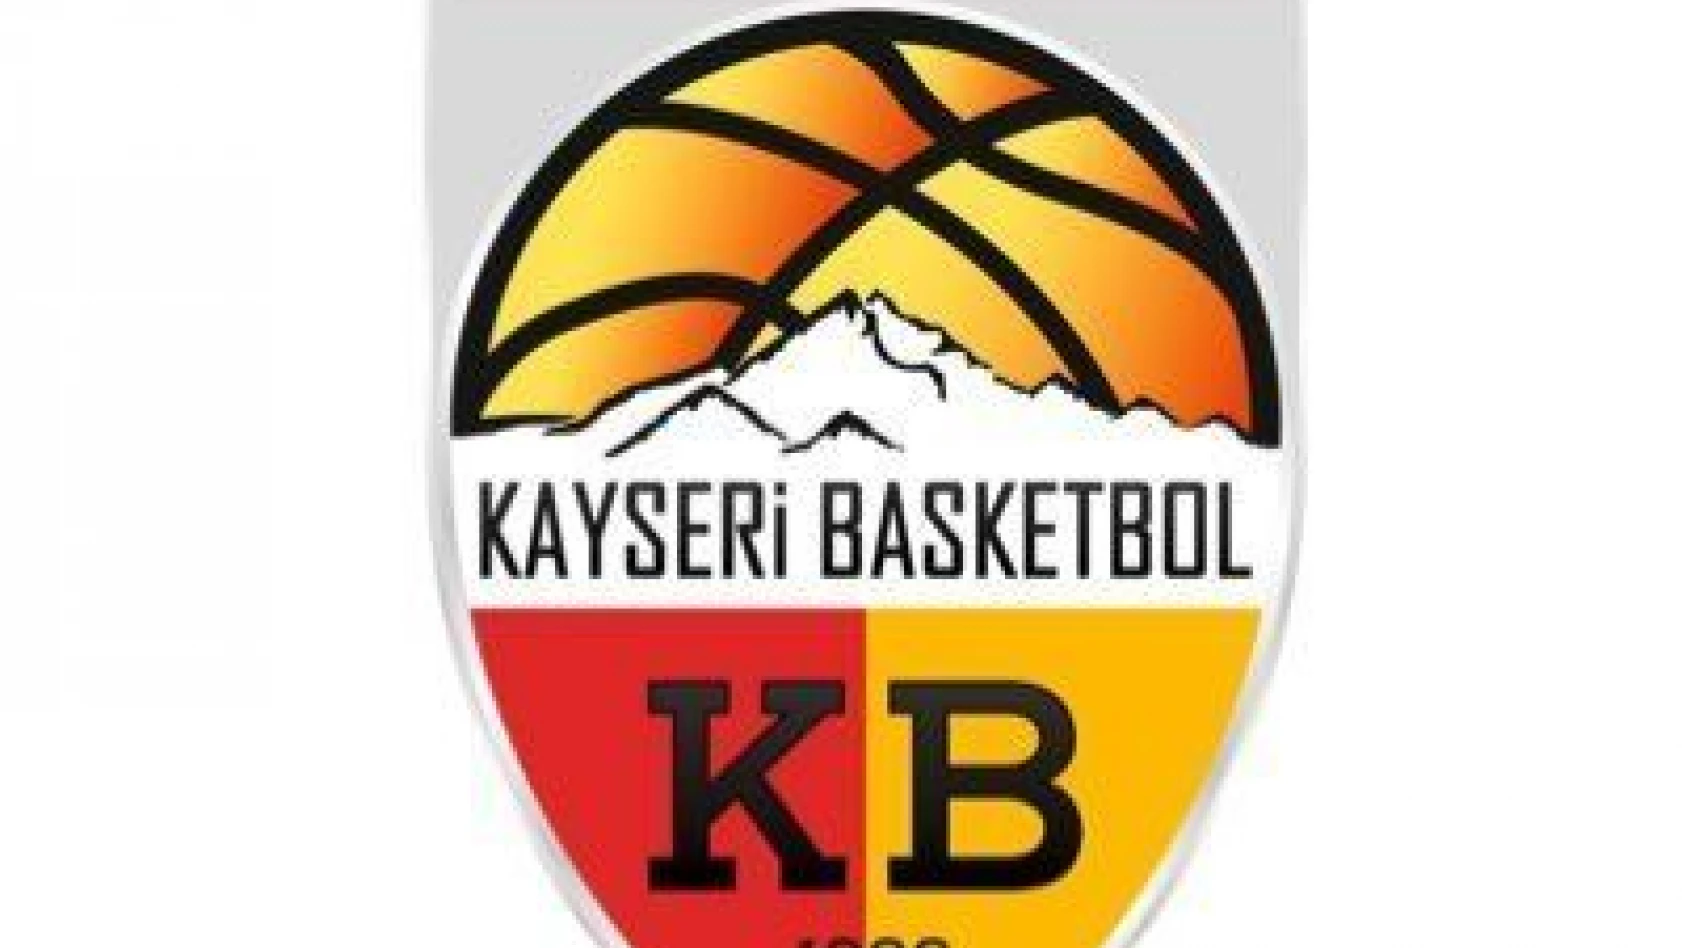  Bellona Kayseri Basketbol'a 750 bin lira destek